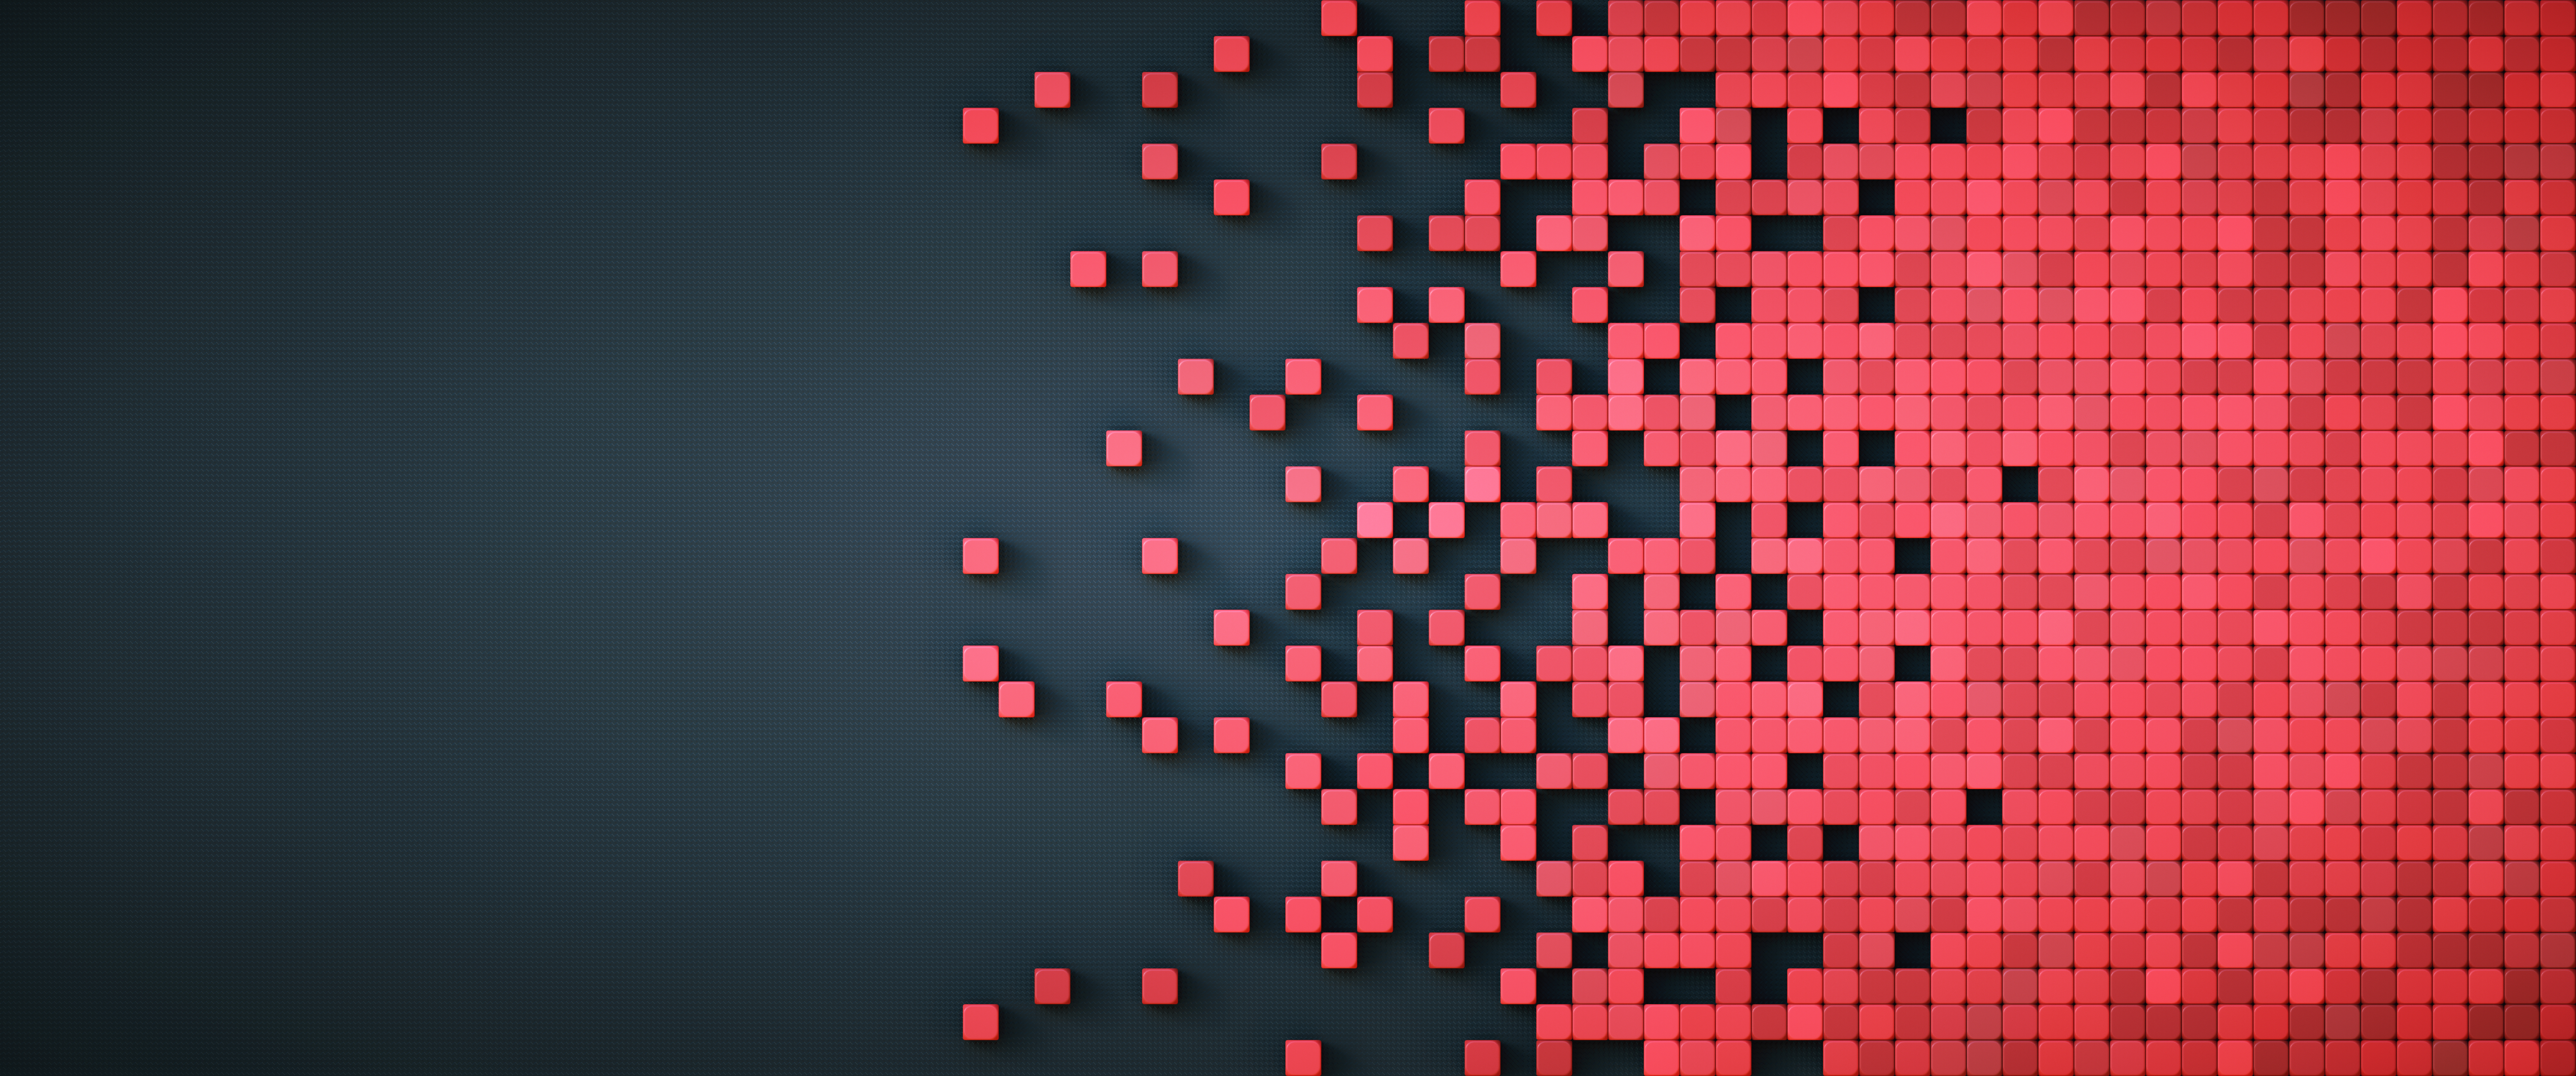 Représentation de données pixélisées avec des formes de cubes physiques rouges sur fond artificiel noir, composition carrelable